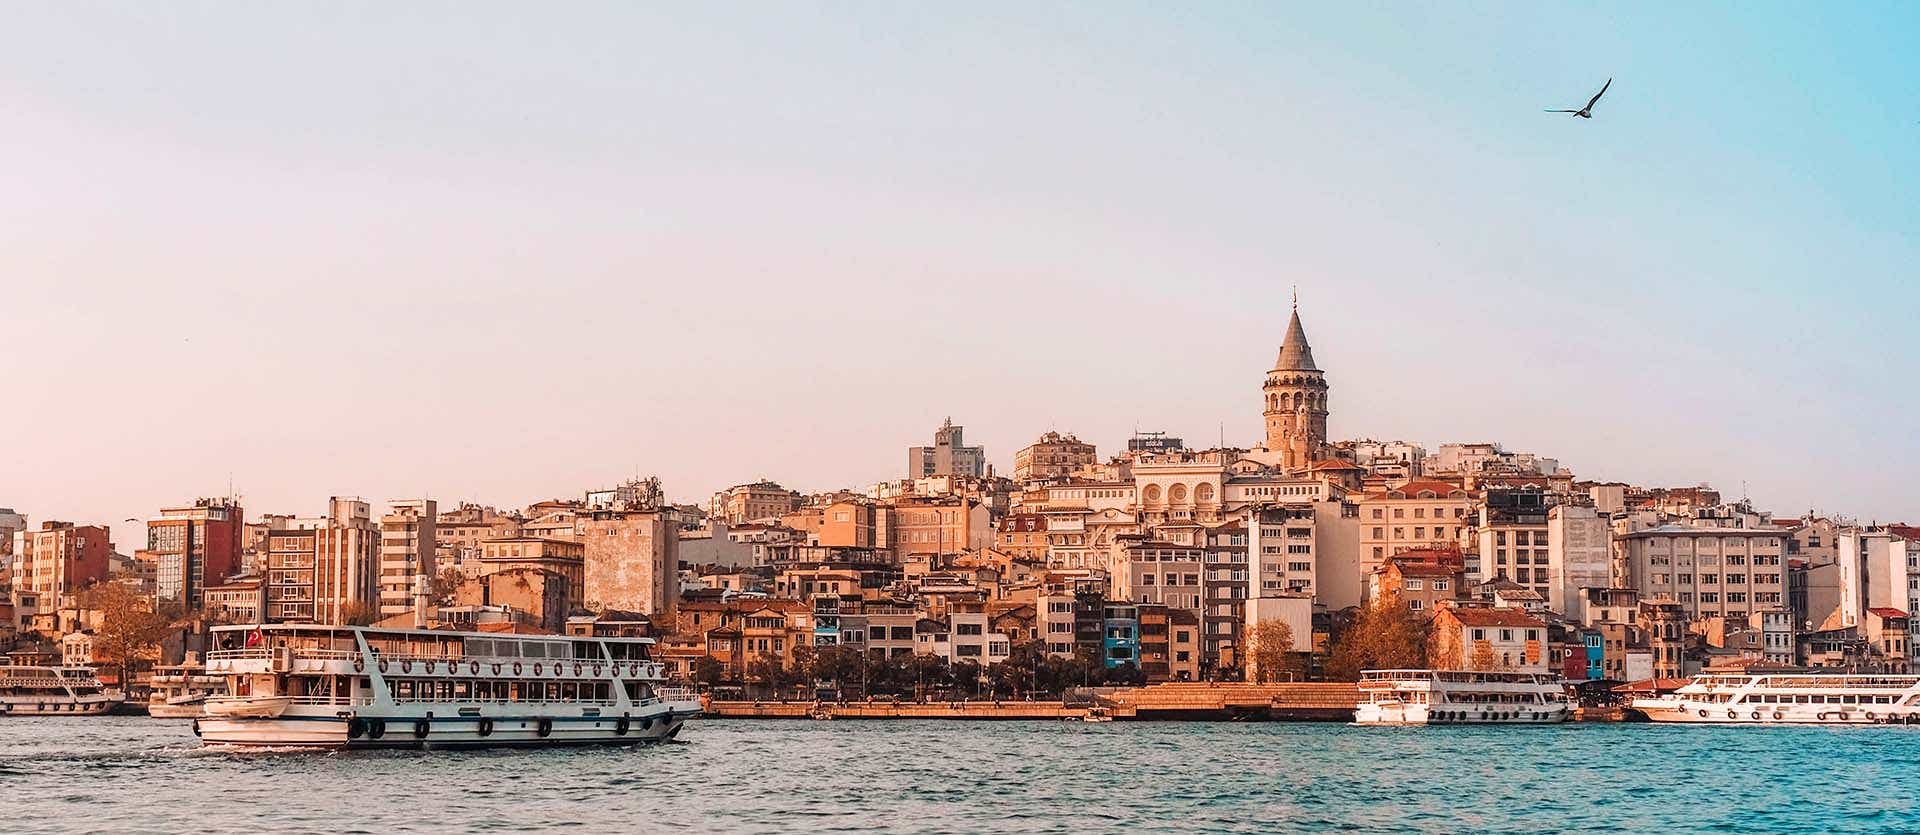 View across the Bosphorus <span class="iconos separador"></span> Istanbul <span class="iconos separador"></span> Turkey